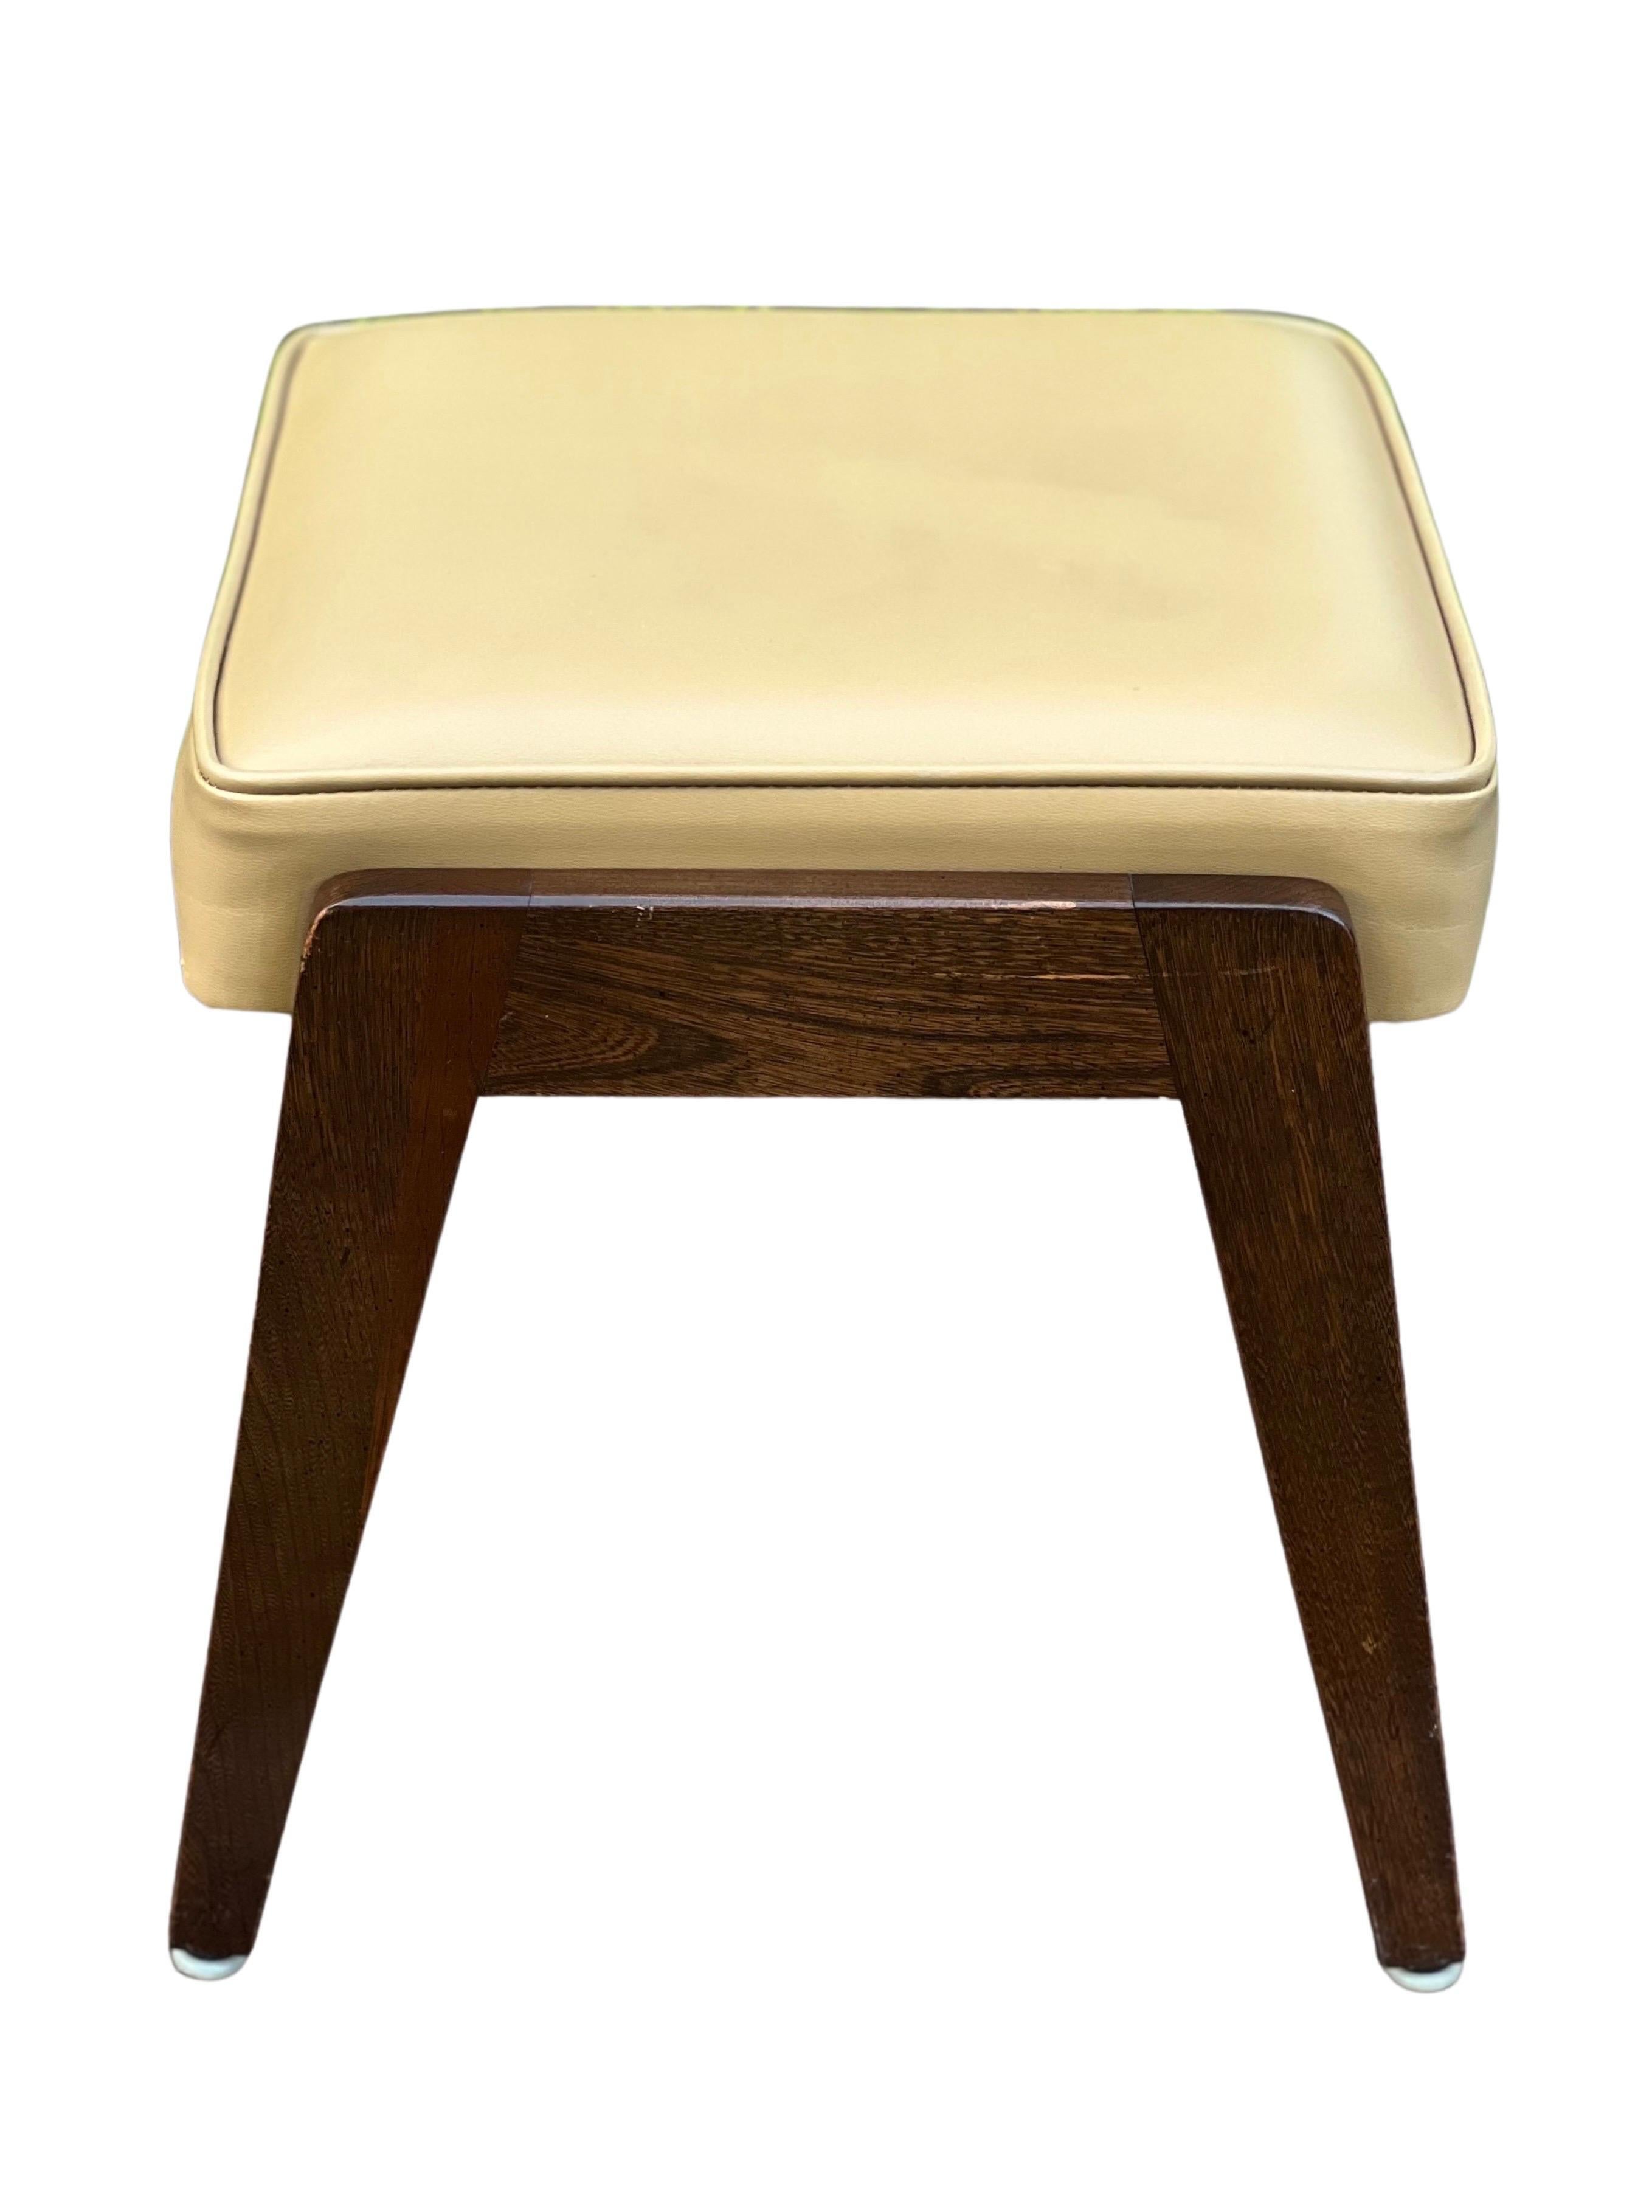 vintage mid century footstool